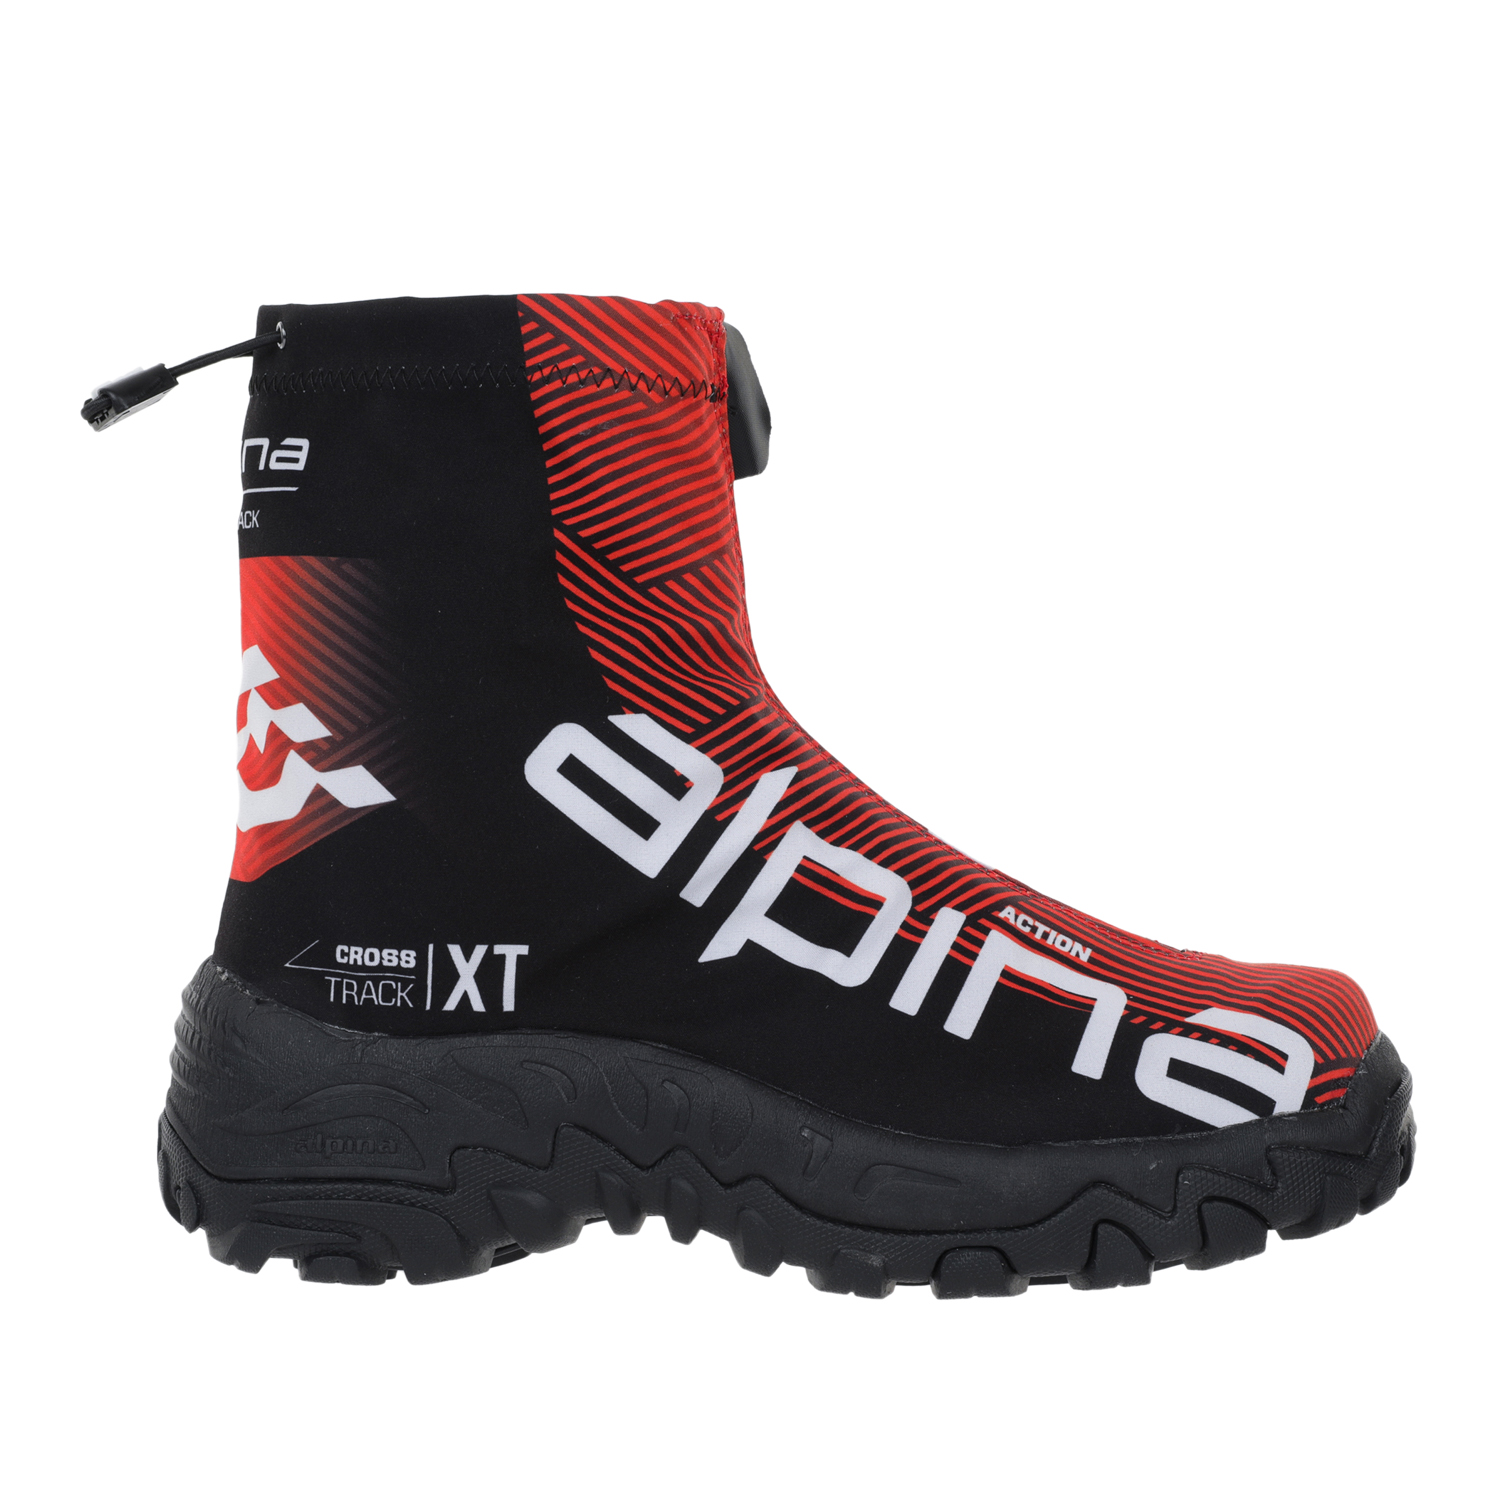 Ботинки Alpina Xt Action, red/black/white, 41 EU